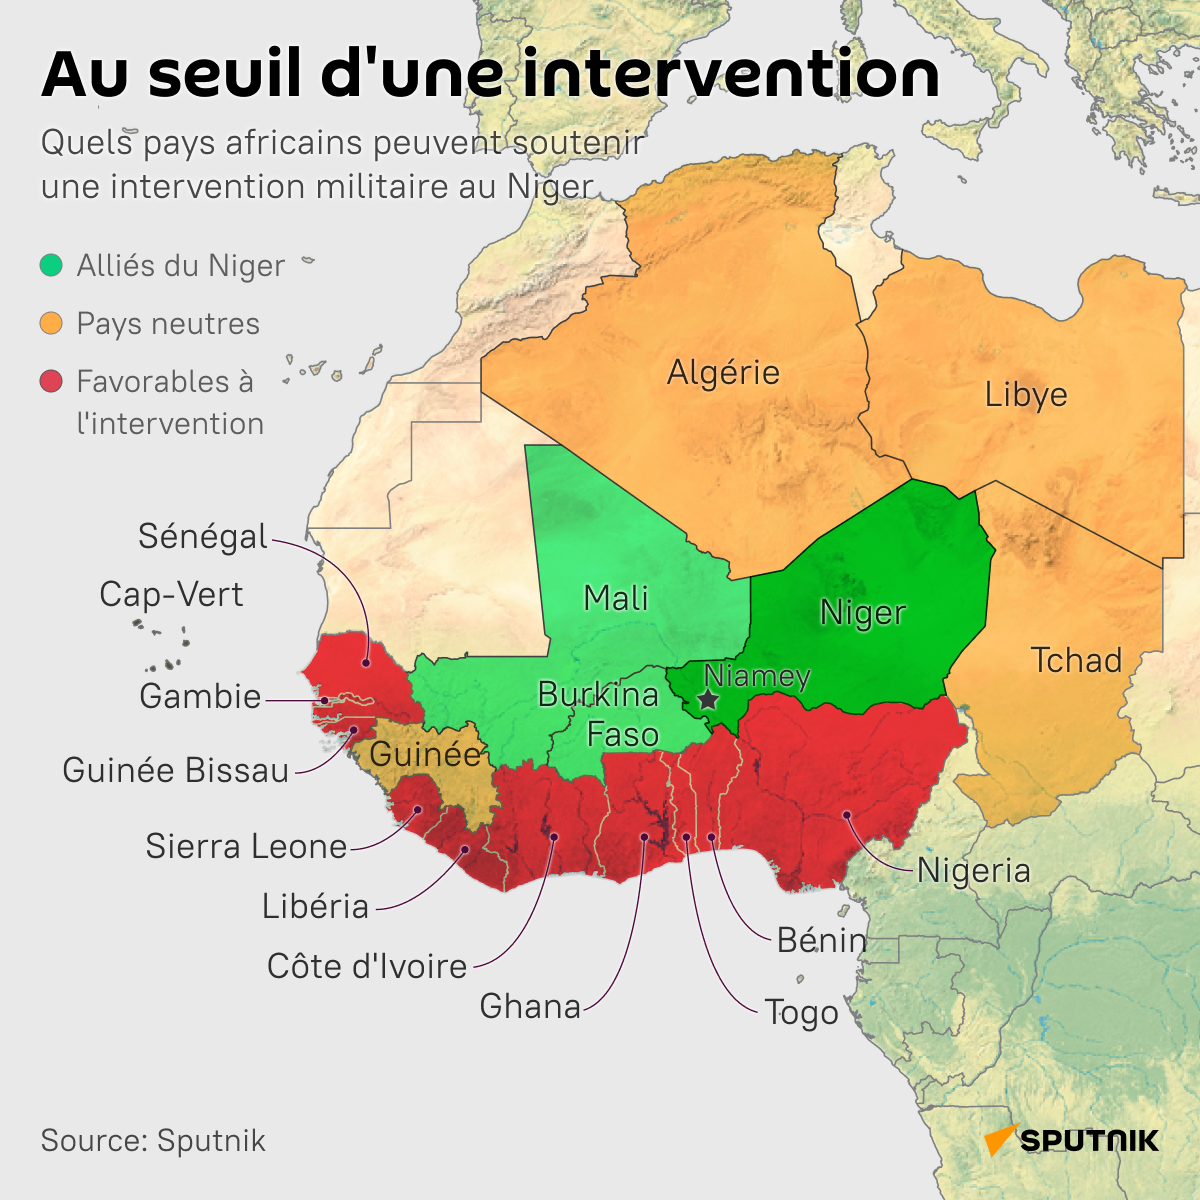 Quels pays africains pourraient soutenir une intervention militaire au Niger? - Sputnik Afrique